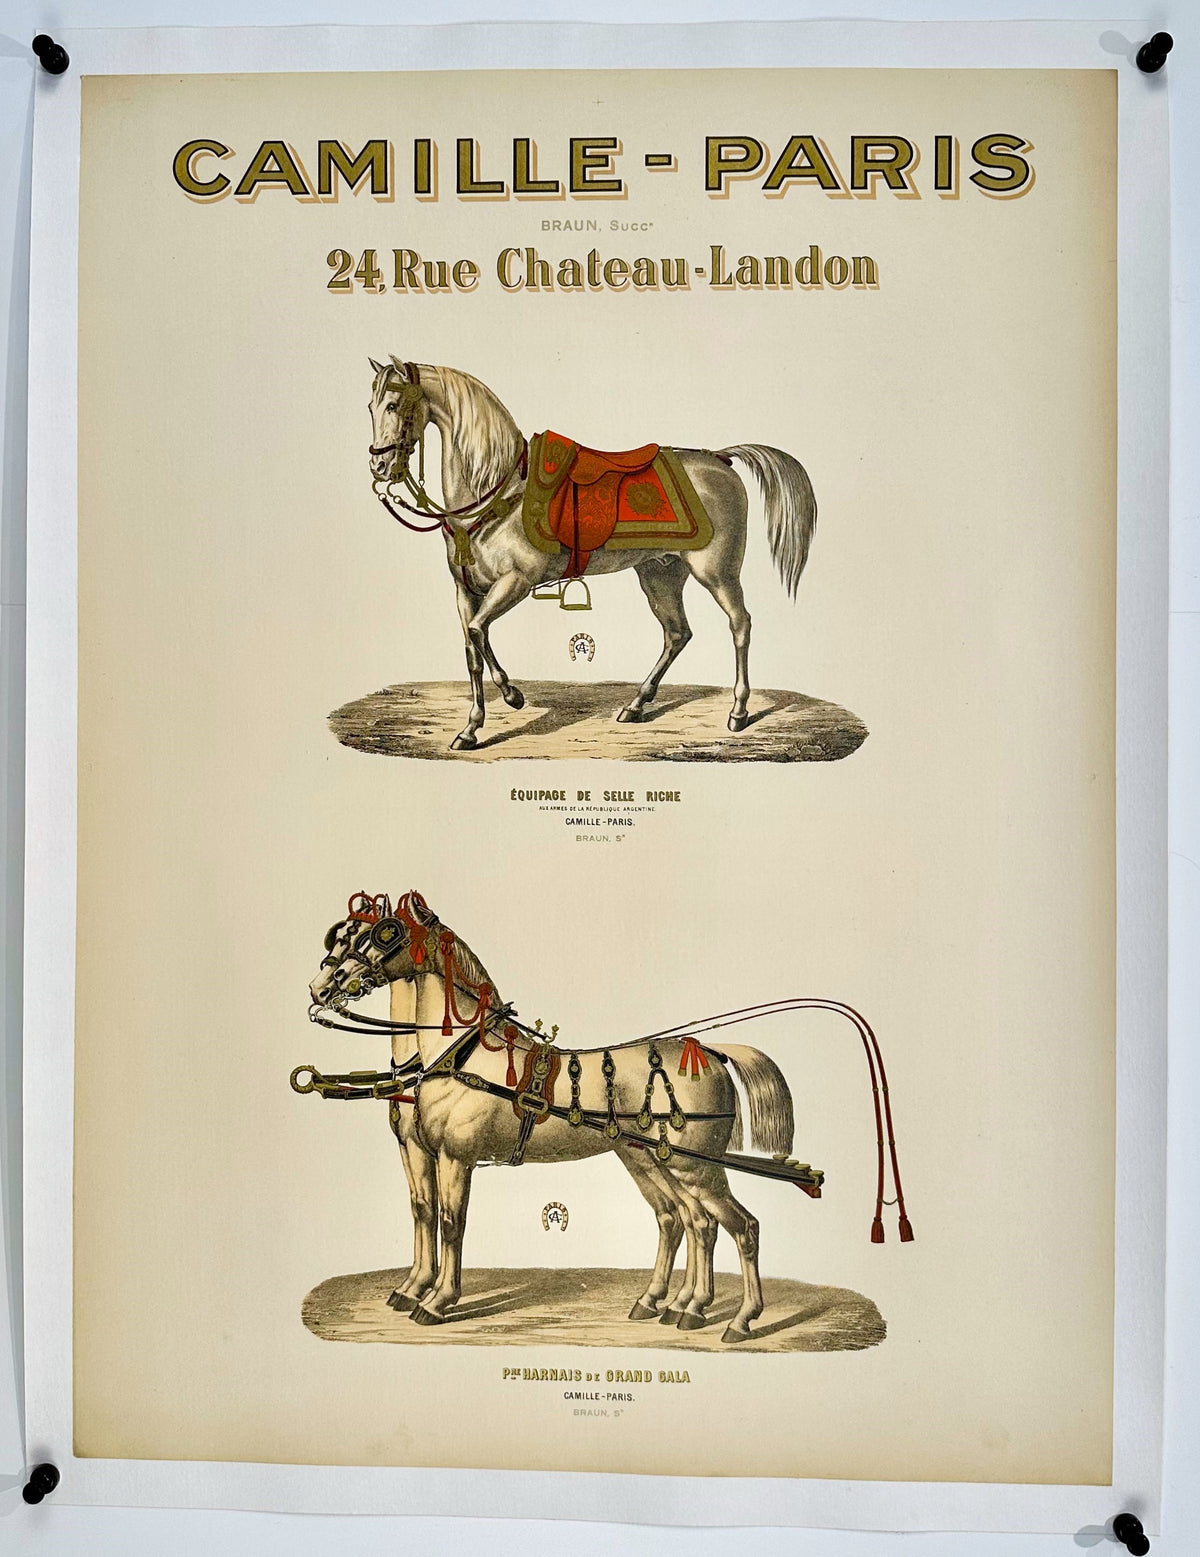 Camille-Paris Harness Co. - Authentic Vintage Poster